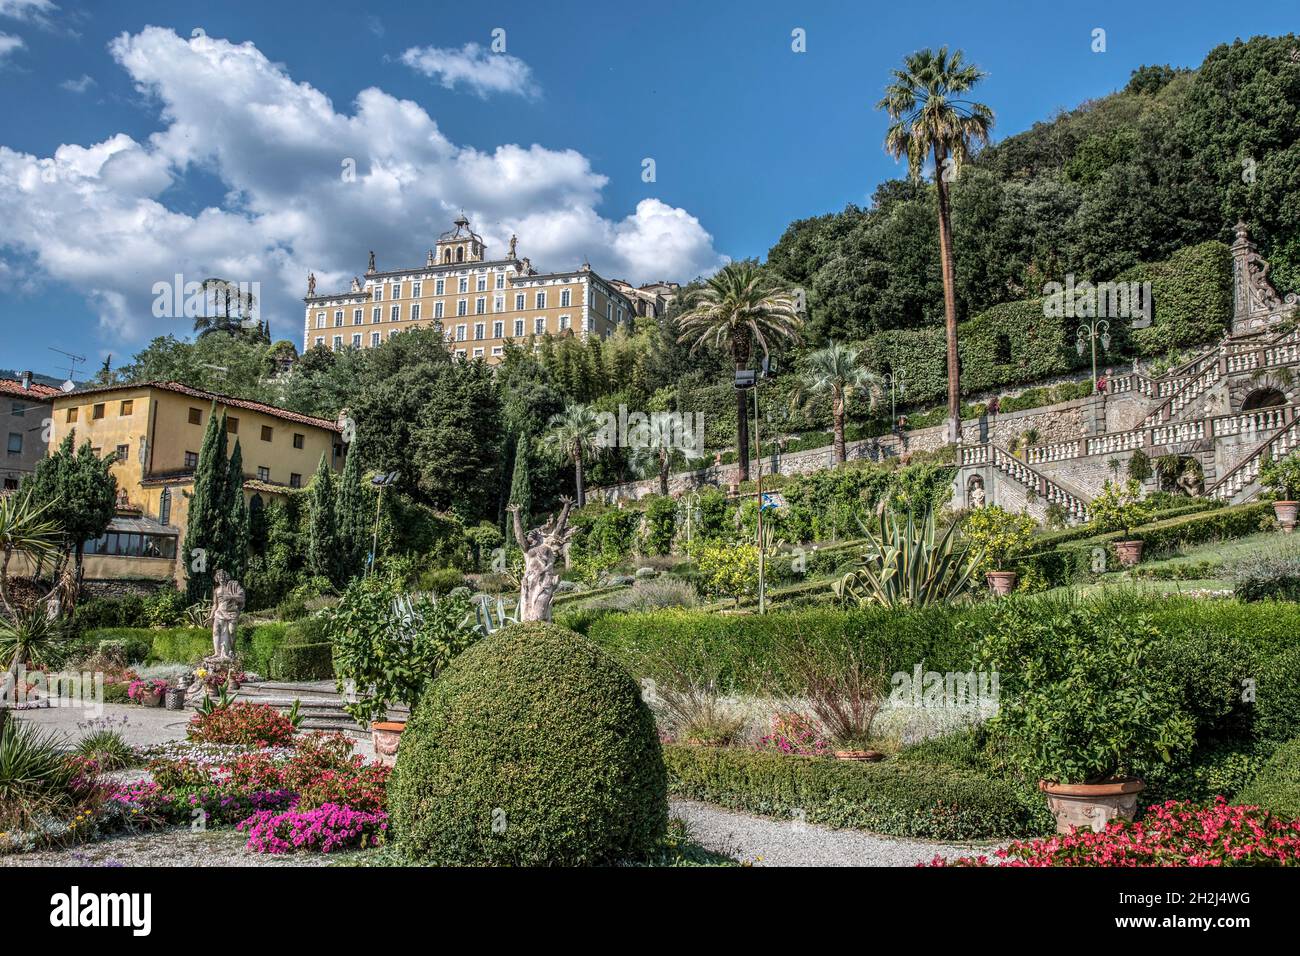 Collodi, Giardino Garzoni (Garzoni Garden) in Villa Garzoni at Collodi, Tuscany, Italy Stock Photo